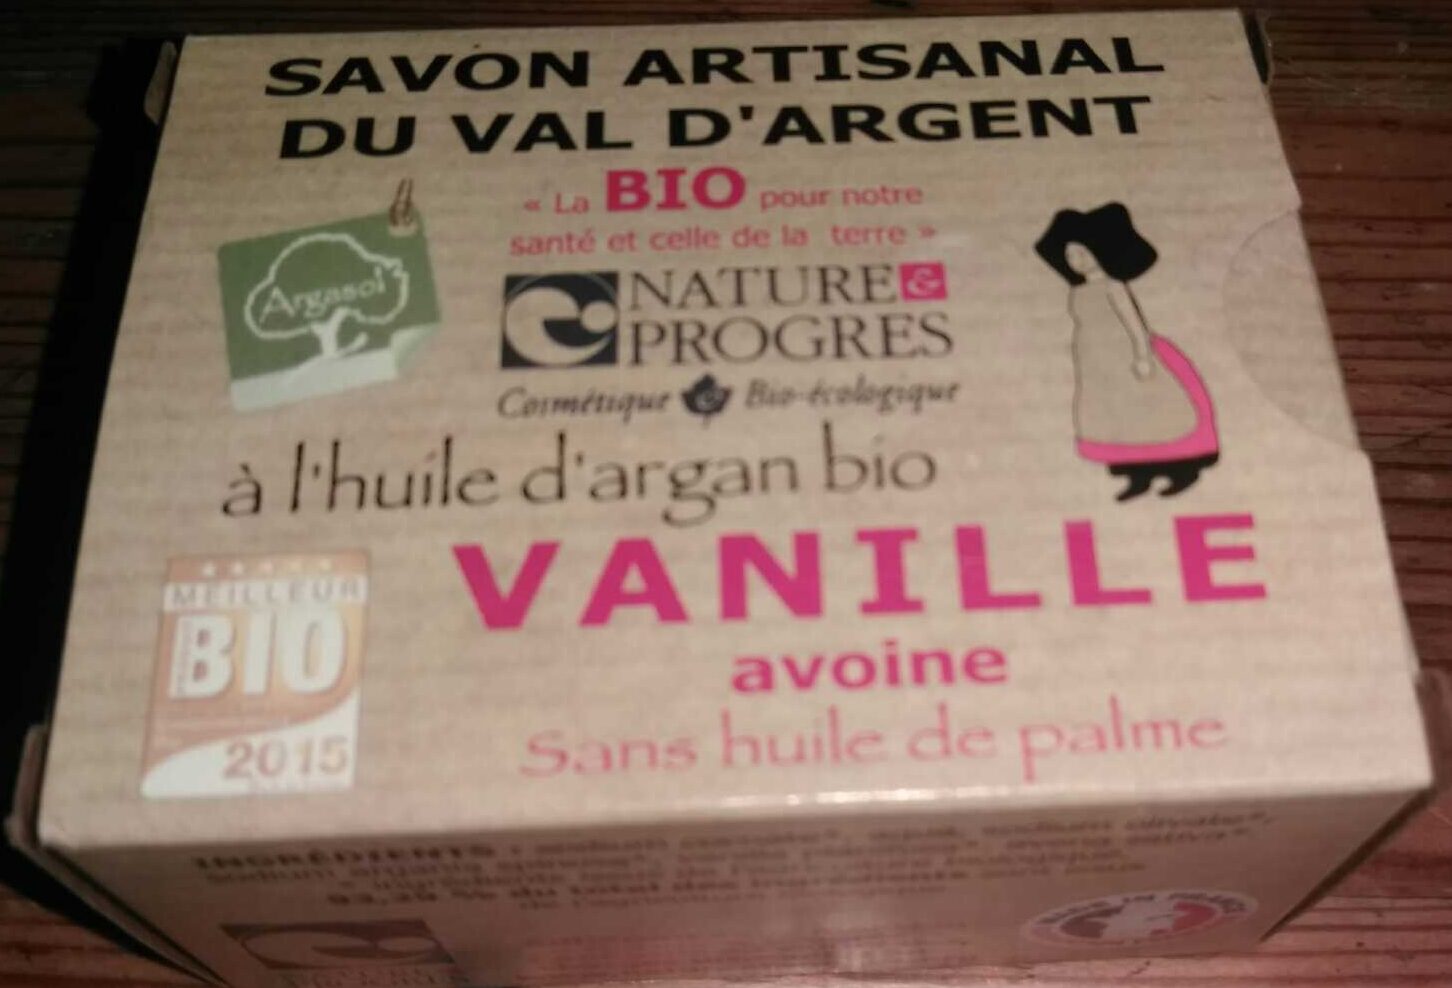 Savon artisanal du Val d'Argent à l'huile d'argan bio Vanille Avoine - Product - fr